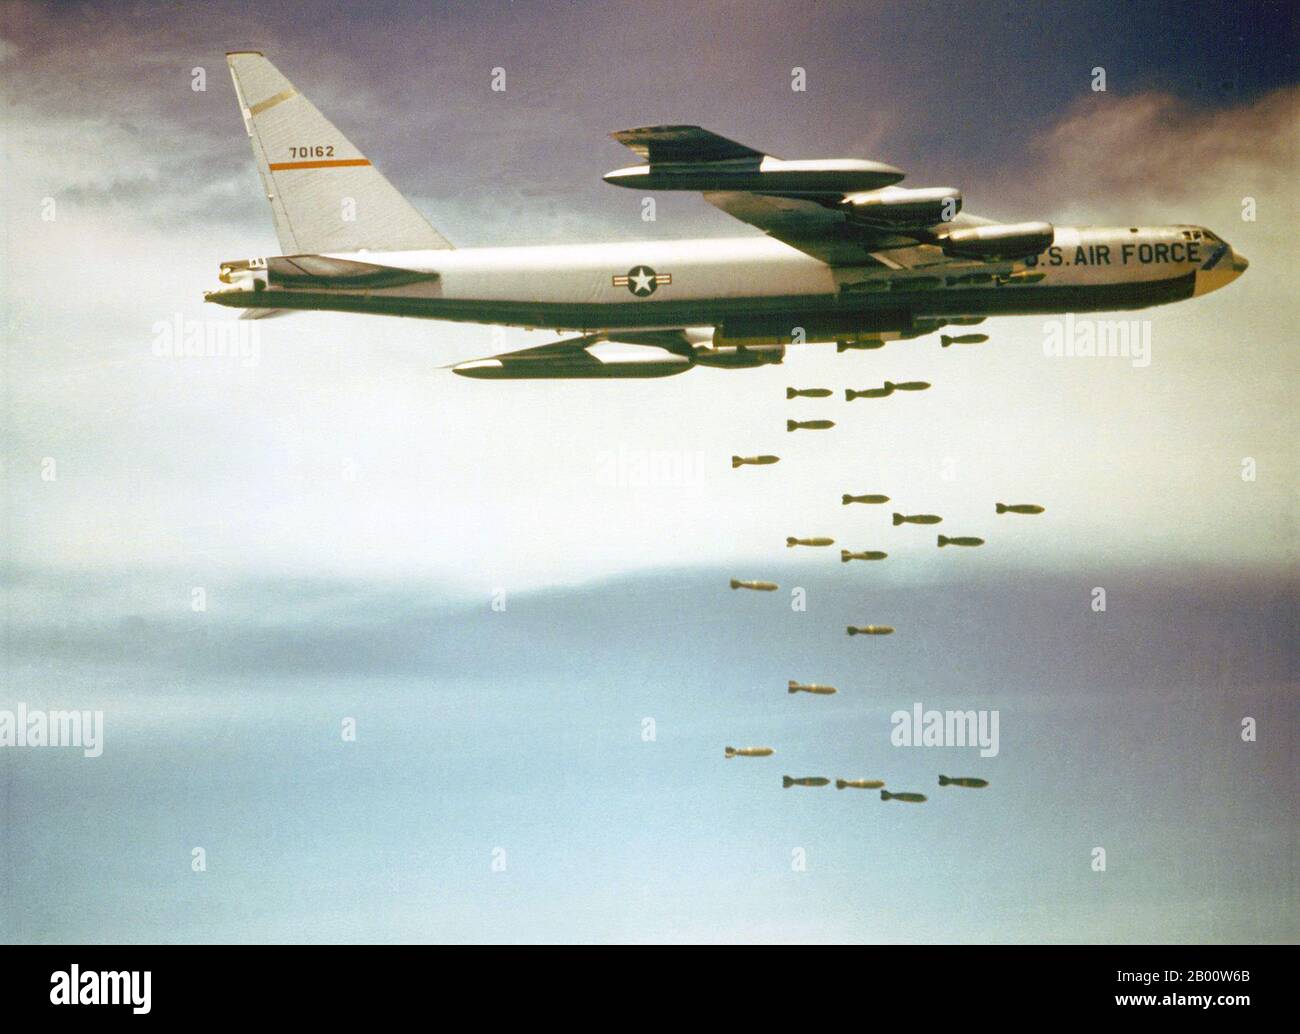 Vietnam: Bombardieri americani B-52F del comando aereo strategico USAF che scatena il suo carico di bomba sul Vietnam, anni 60. Bombardieri americani B52 del comando aereo strategico USAF che scatena il suo carico di bomba sul Vietnam. I B52 che volavano fuori da Guam e Thailandia sono stati utilizzati nelle operazioni Arclight attraverso il Vietnam del Sud e nelle operazioni contro il Nord come Linebacker 1 e Linebacker 2. Hanno causato danni immensi e perdite di vita. Foto Stock